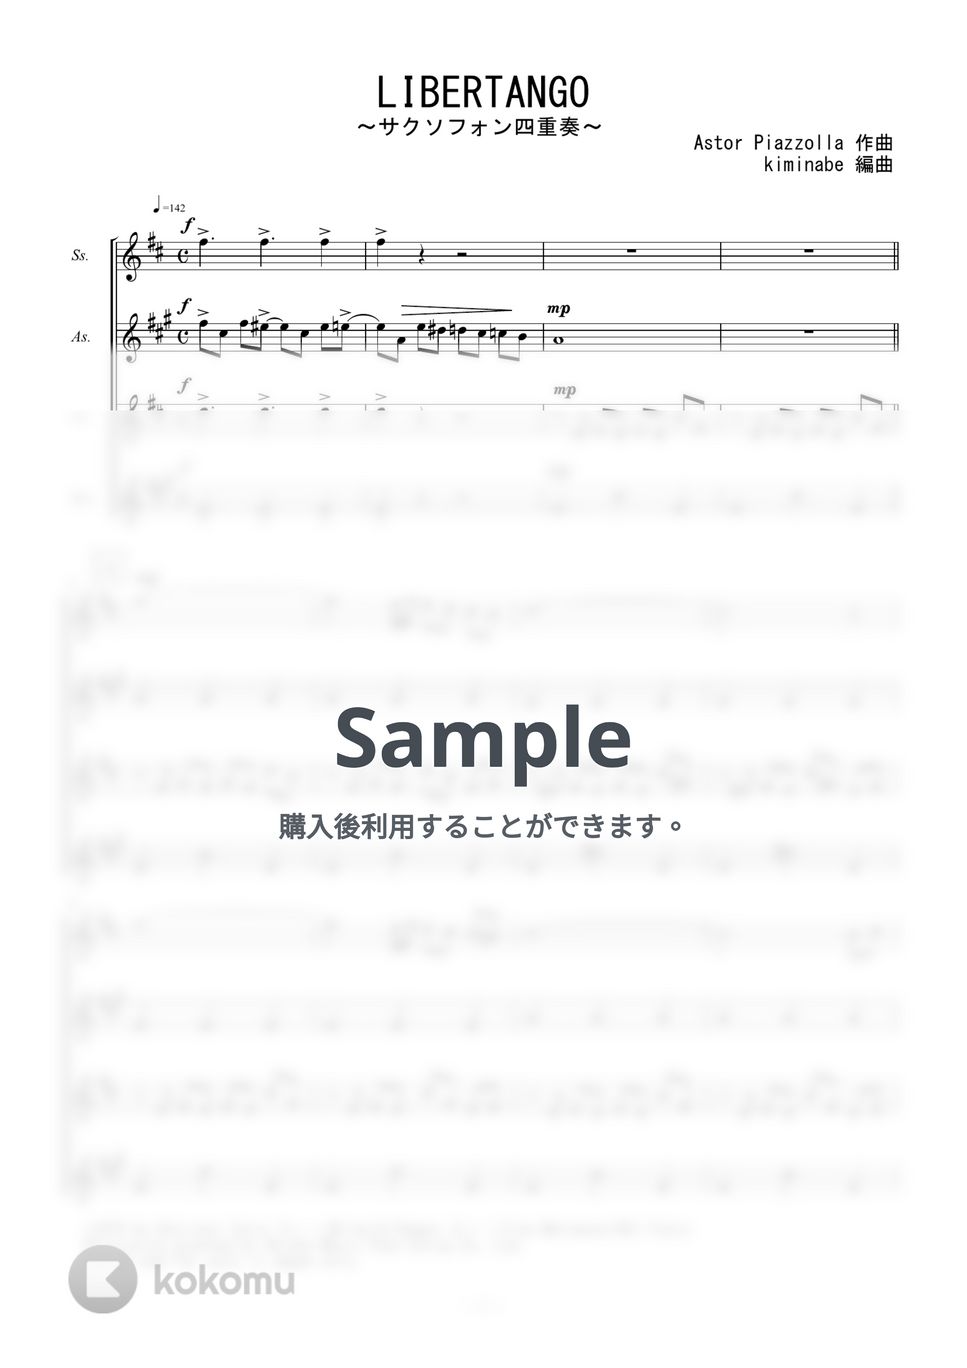 ピアソラ - LIBERTANGO (サクソフォン四重奏) by kiminabe